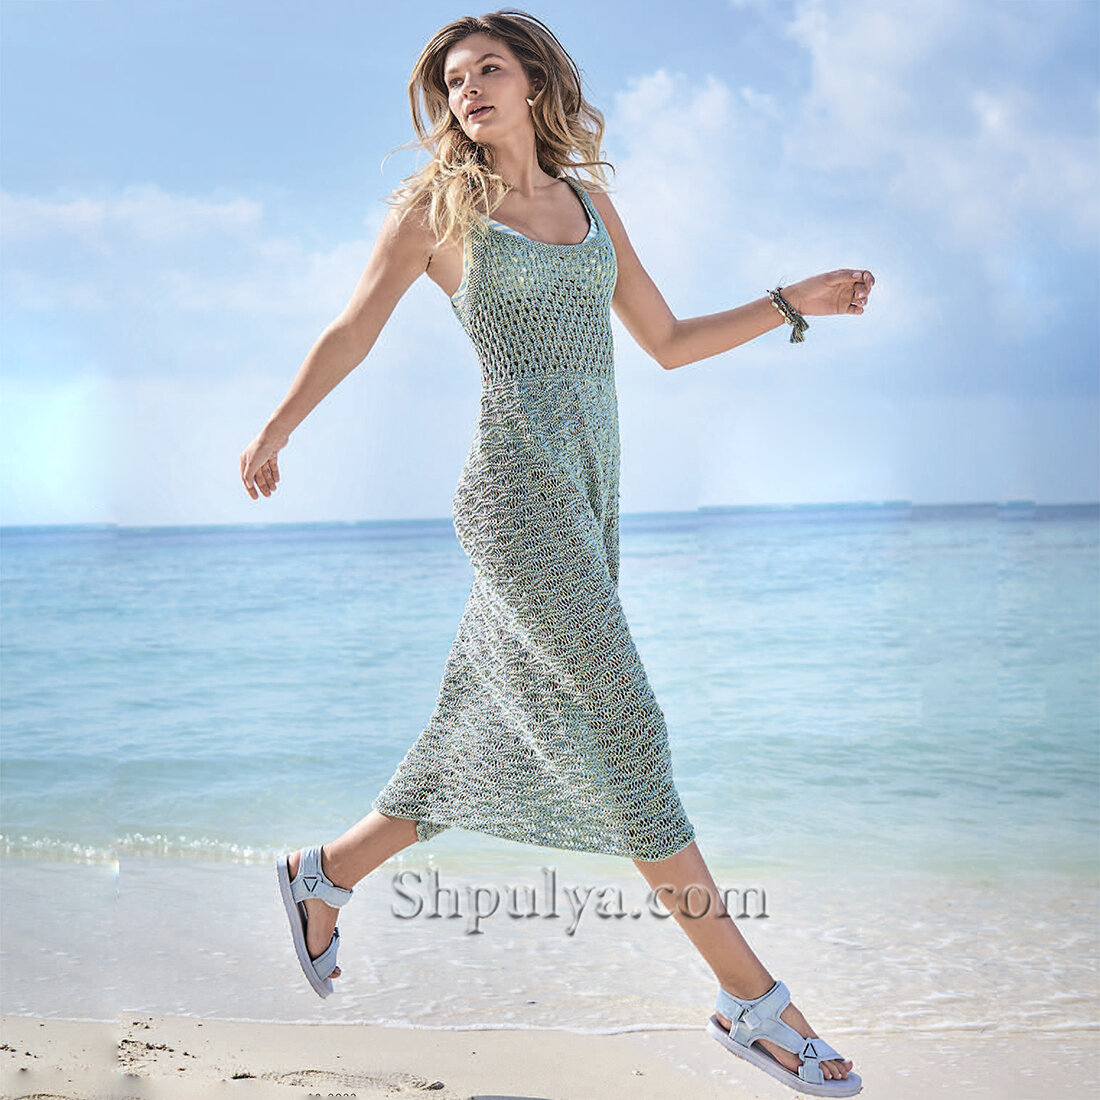 Выкройки пляжных платьев от Анастасии Корфиати | Образец моды, Пляжное платье, Пляжные платья